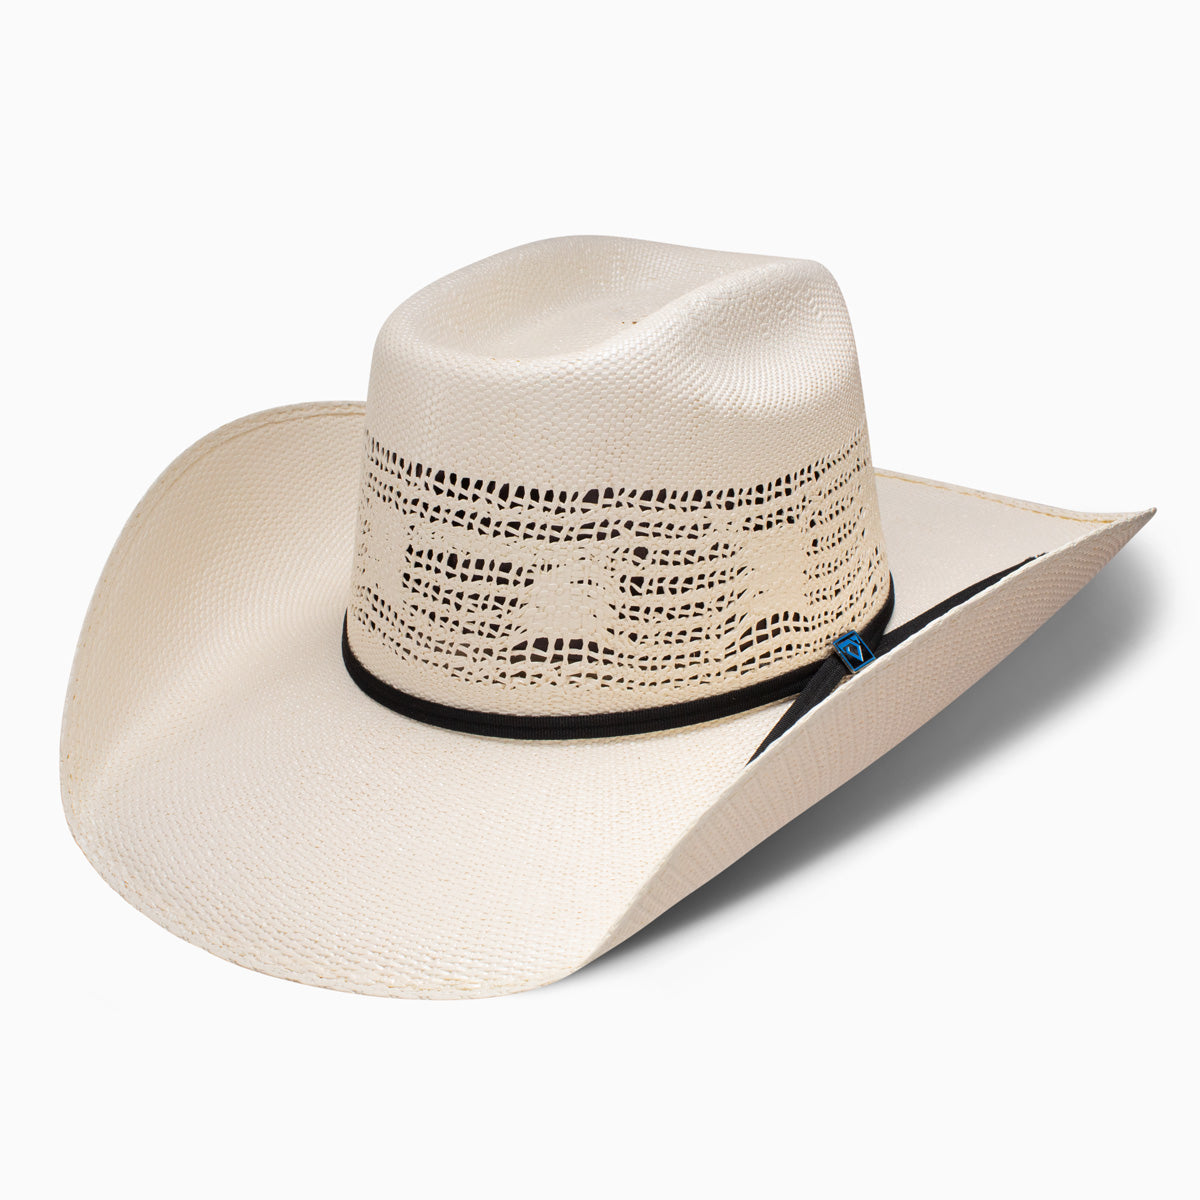 Georgia Boy Cowboy Hat - Fitted – Resistol